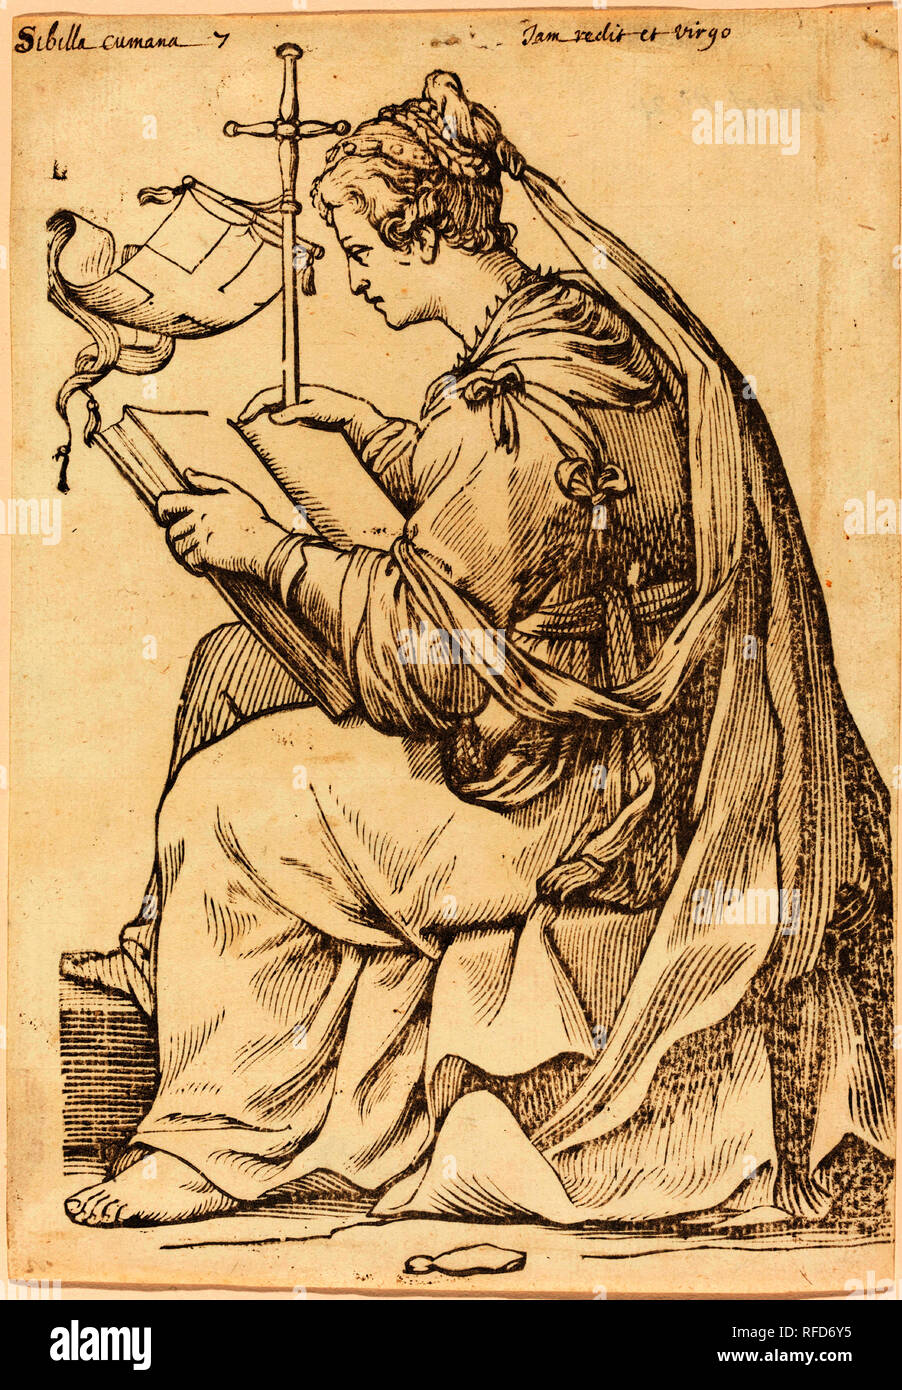 Sibylla Cumana. En date du : 1625. Technique : gravure sur bois. Musée : National Gallery of Art, Washington DC. Auteur : Jacques Stella. Banque D'Images